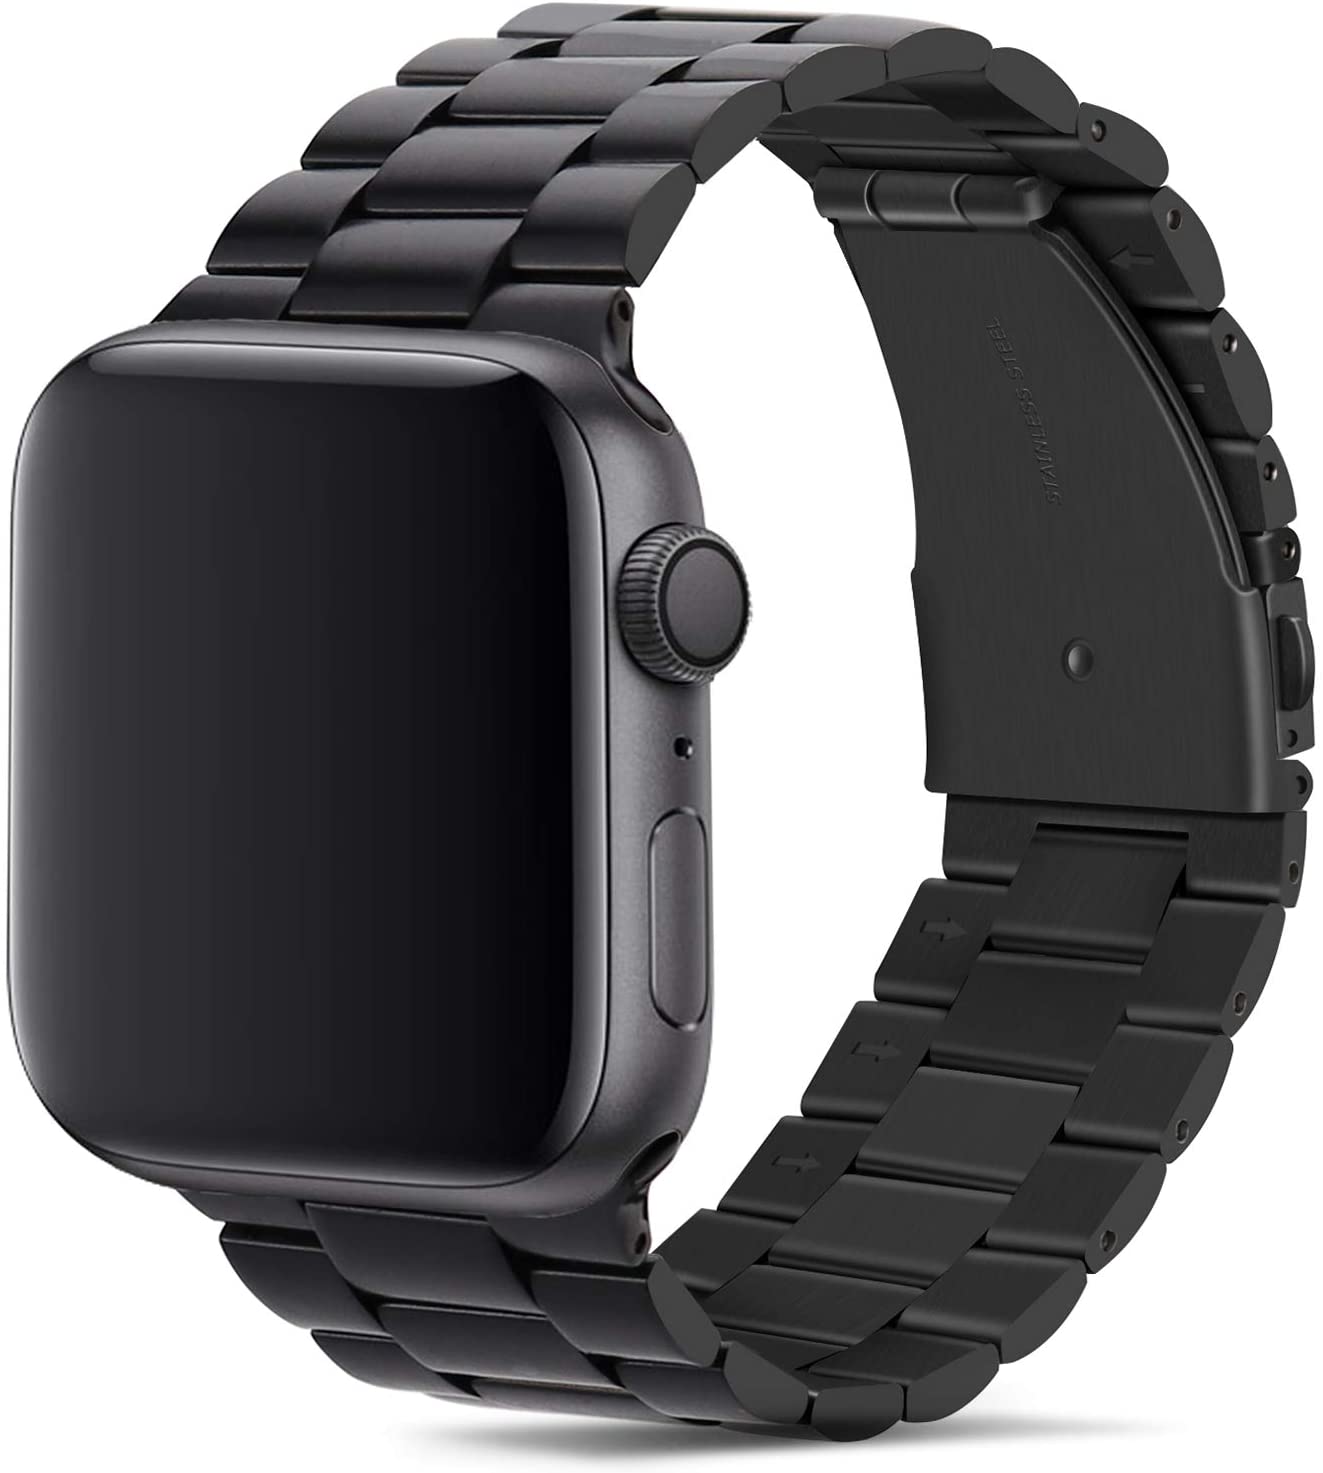 I migliori cinturini per Apple Watch di inizio 2020